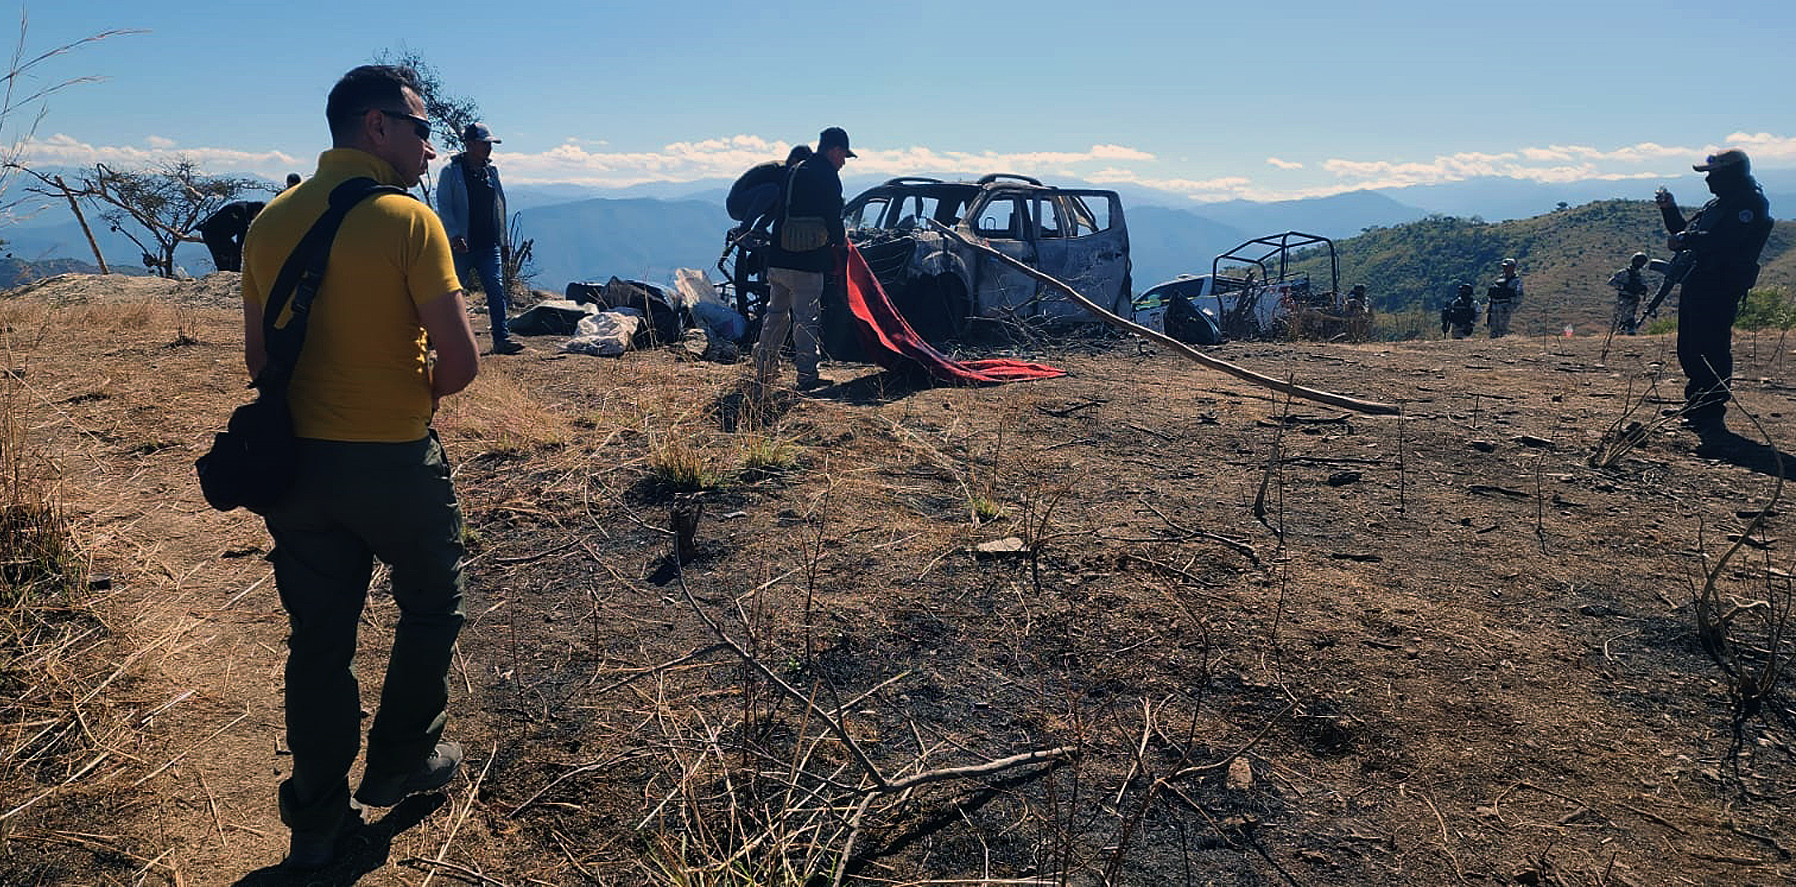 Las autoridades aseguraron que 'se tiene conocimiento que dicho acontecimiento derivó de la confrontación entre los grupos criminales de La Familia Michoacana y Los Tlacos'. (ARCHIVO)